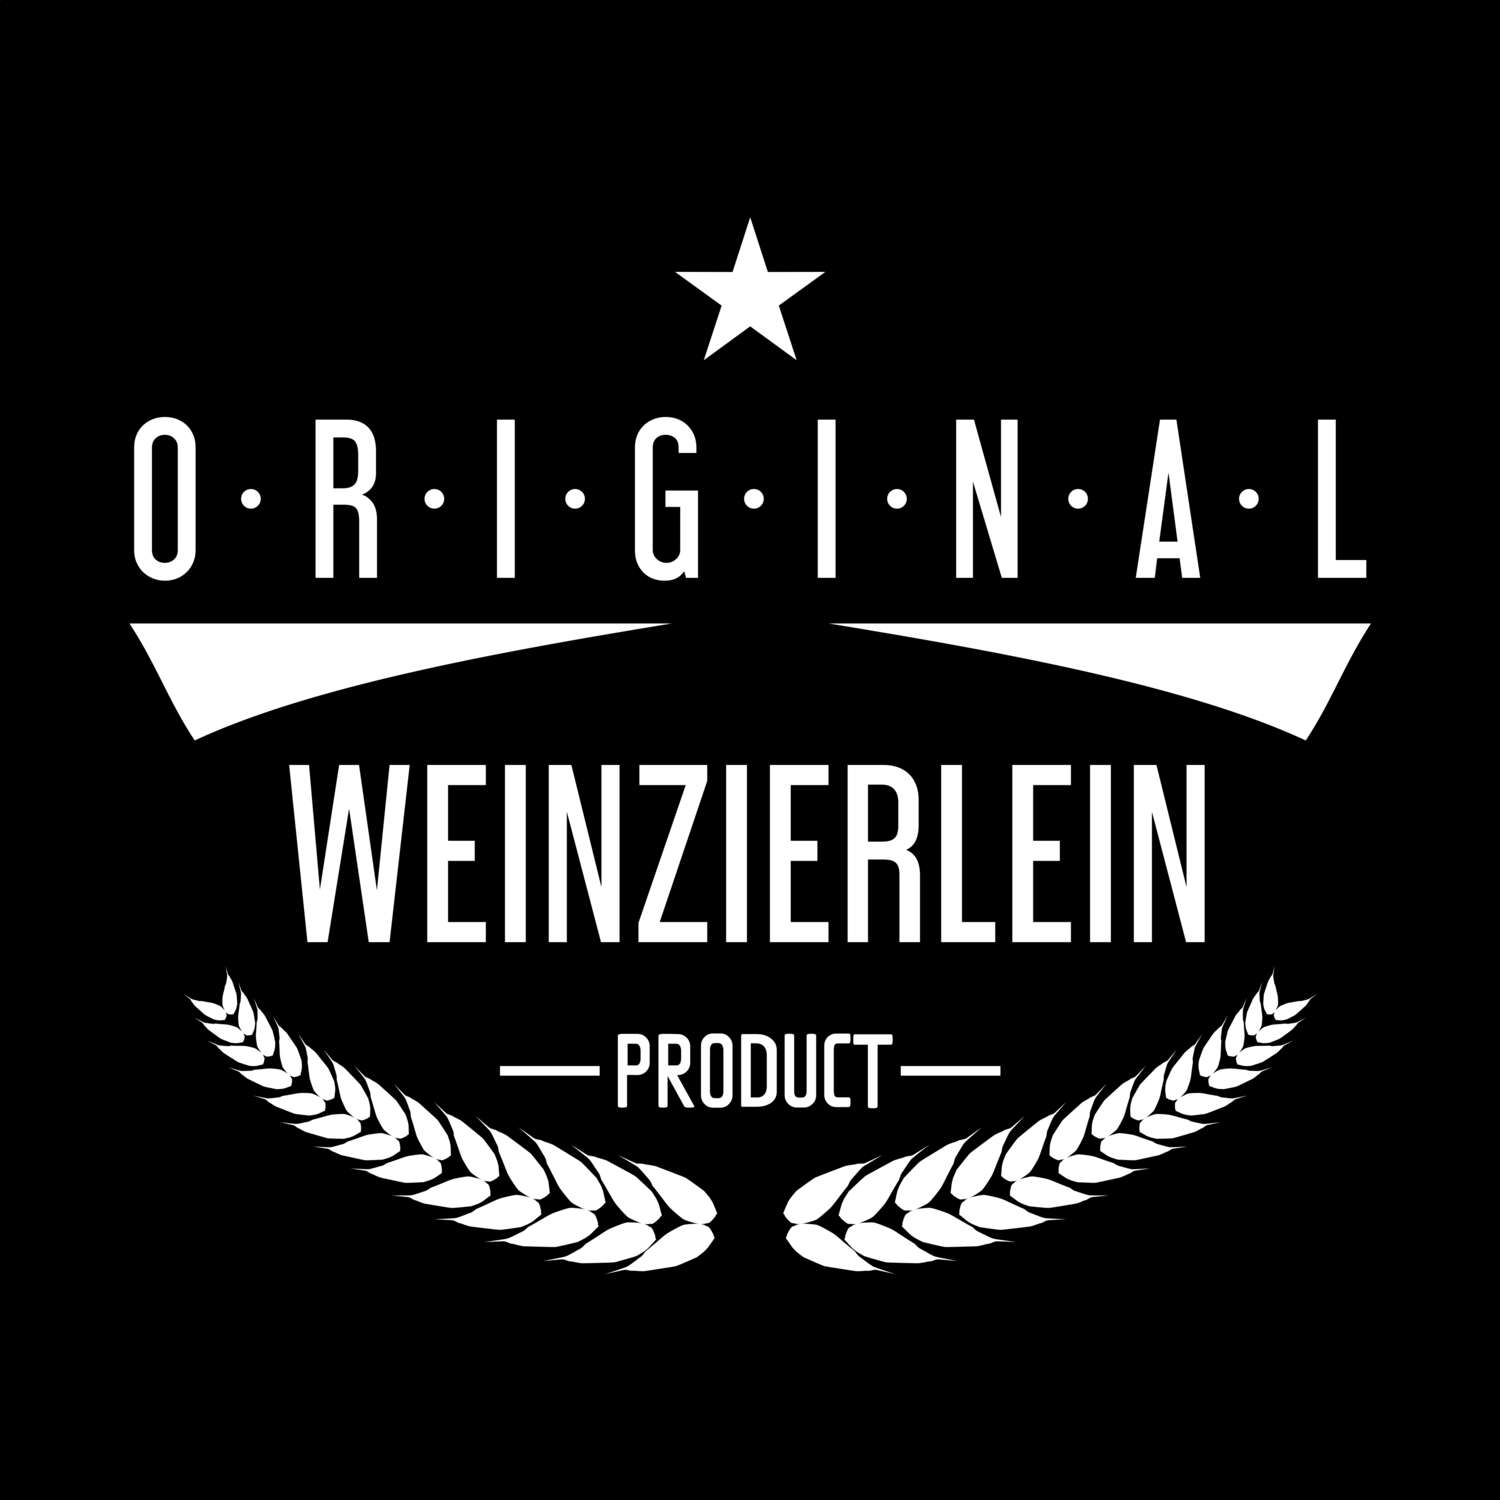 Weinzierlein T-Shirt »Original Product«